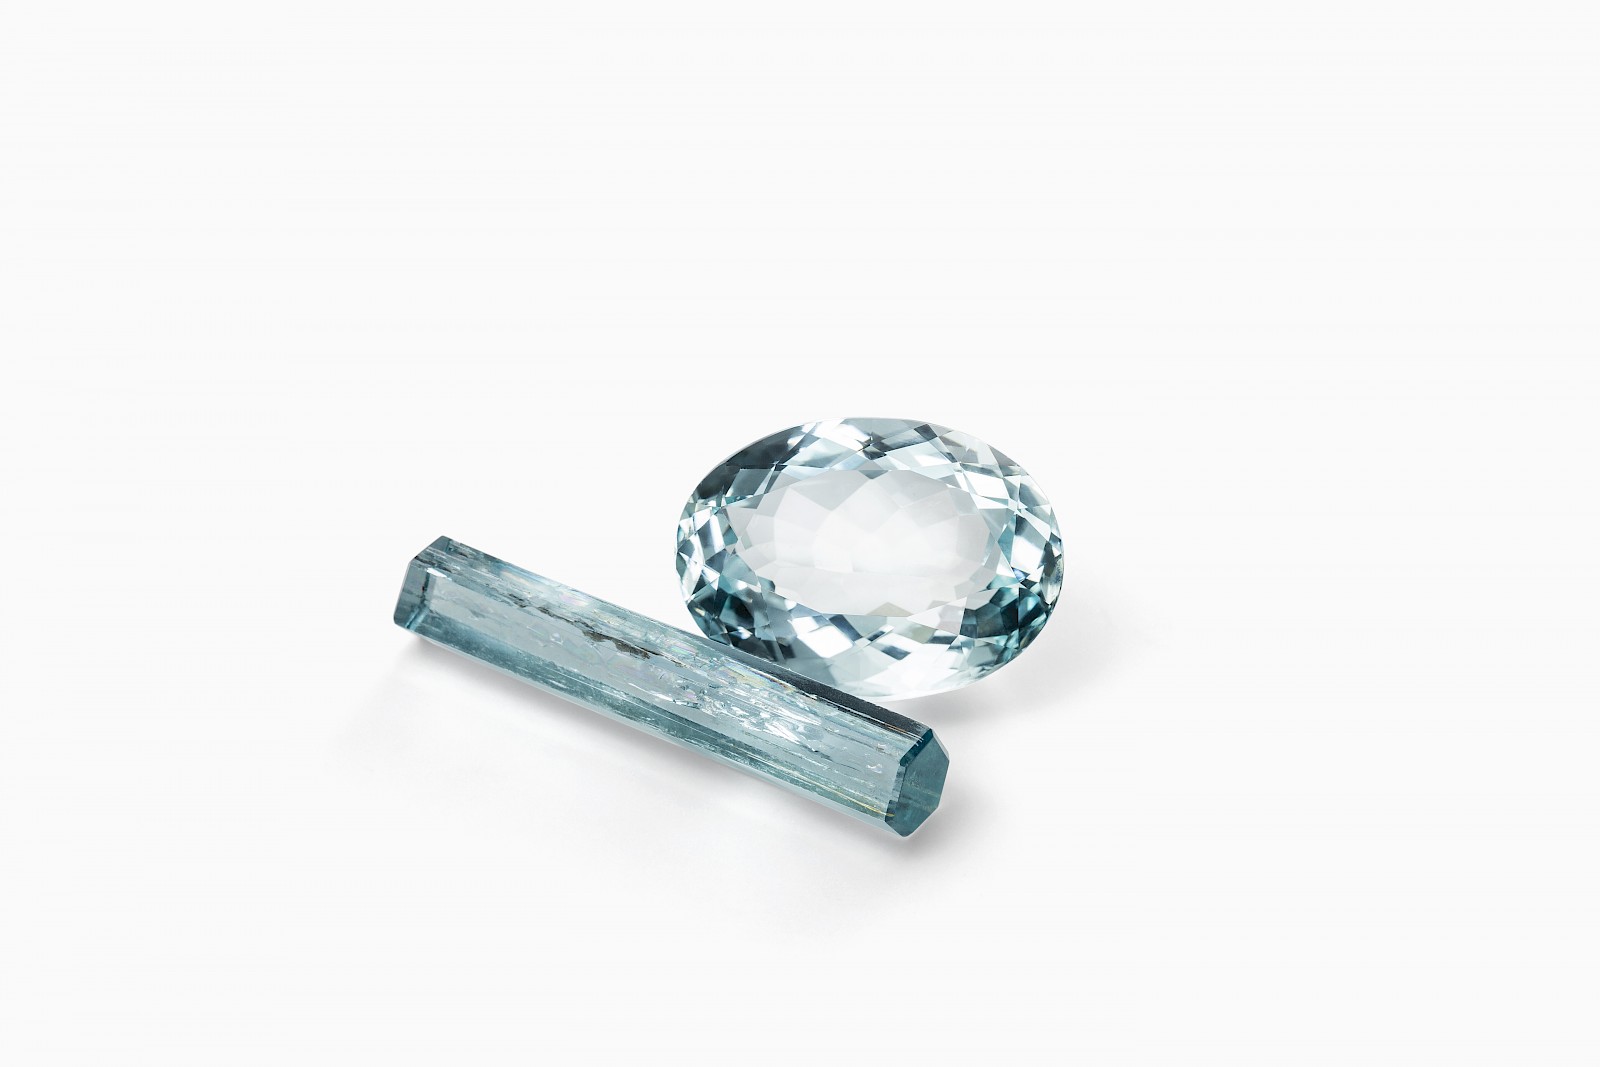 Produktfotografie von Edelsteinen und Diamanten